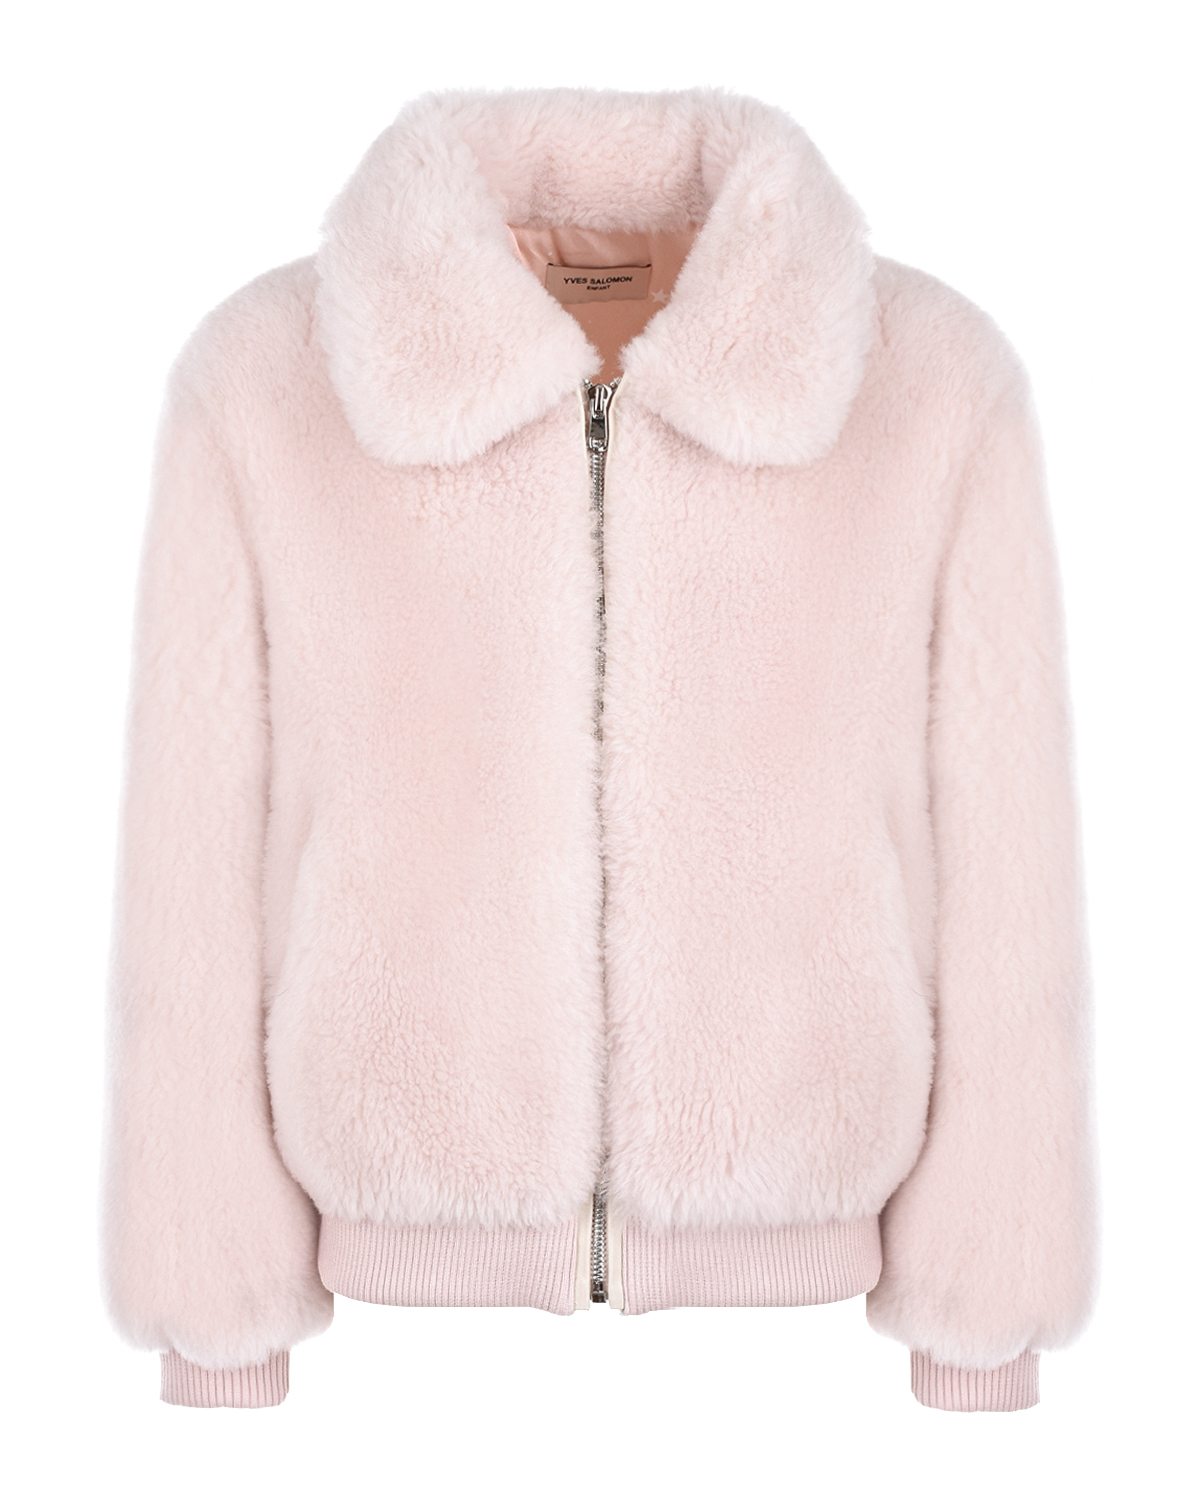 Купить Розовая куртка из экомеха Yves Salomon детская, Белый, 100%шерсть, 100%полиэстер